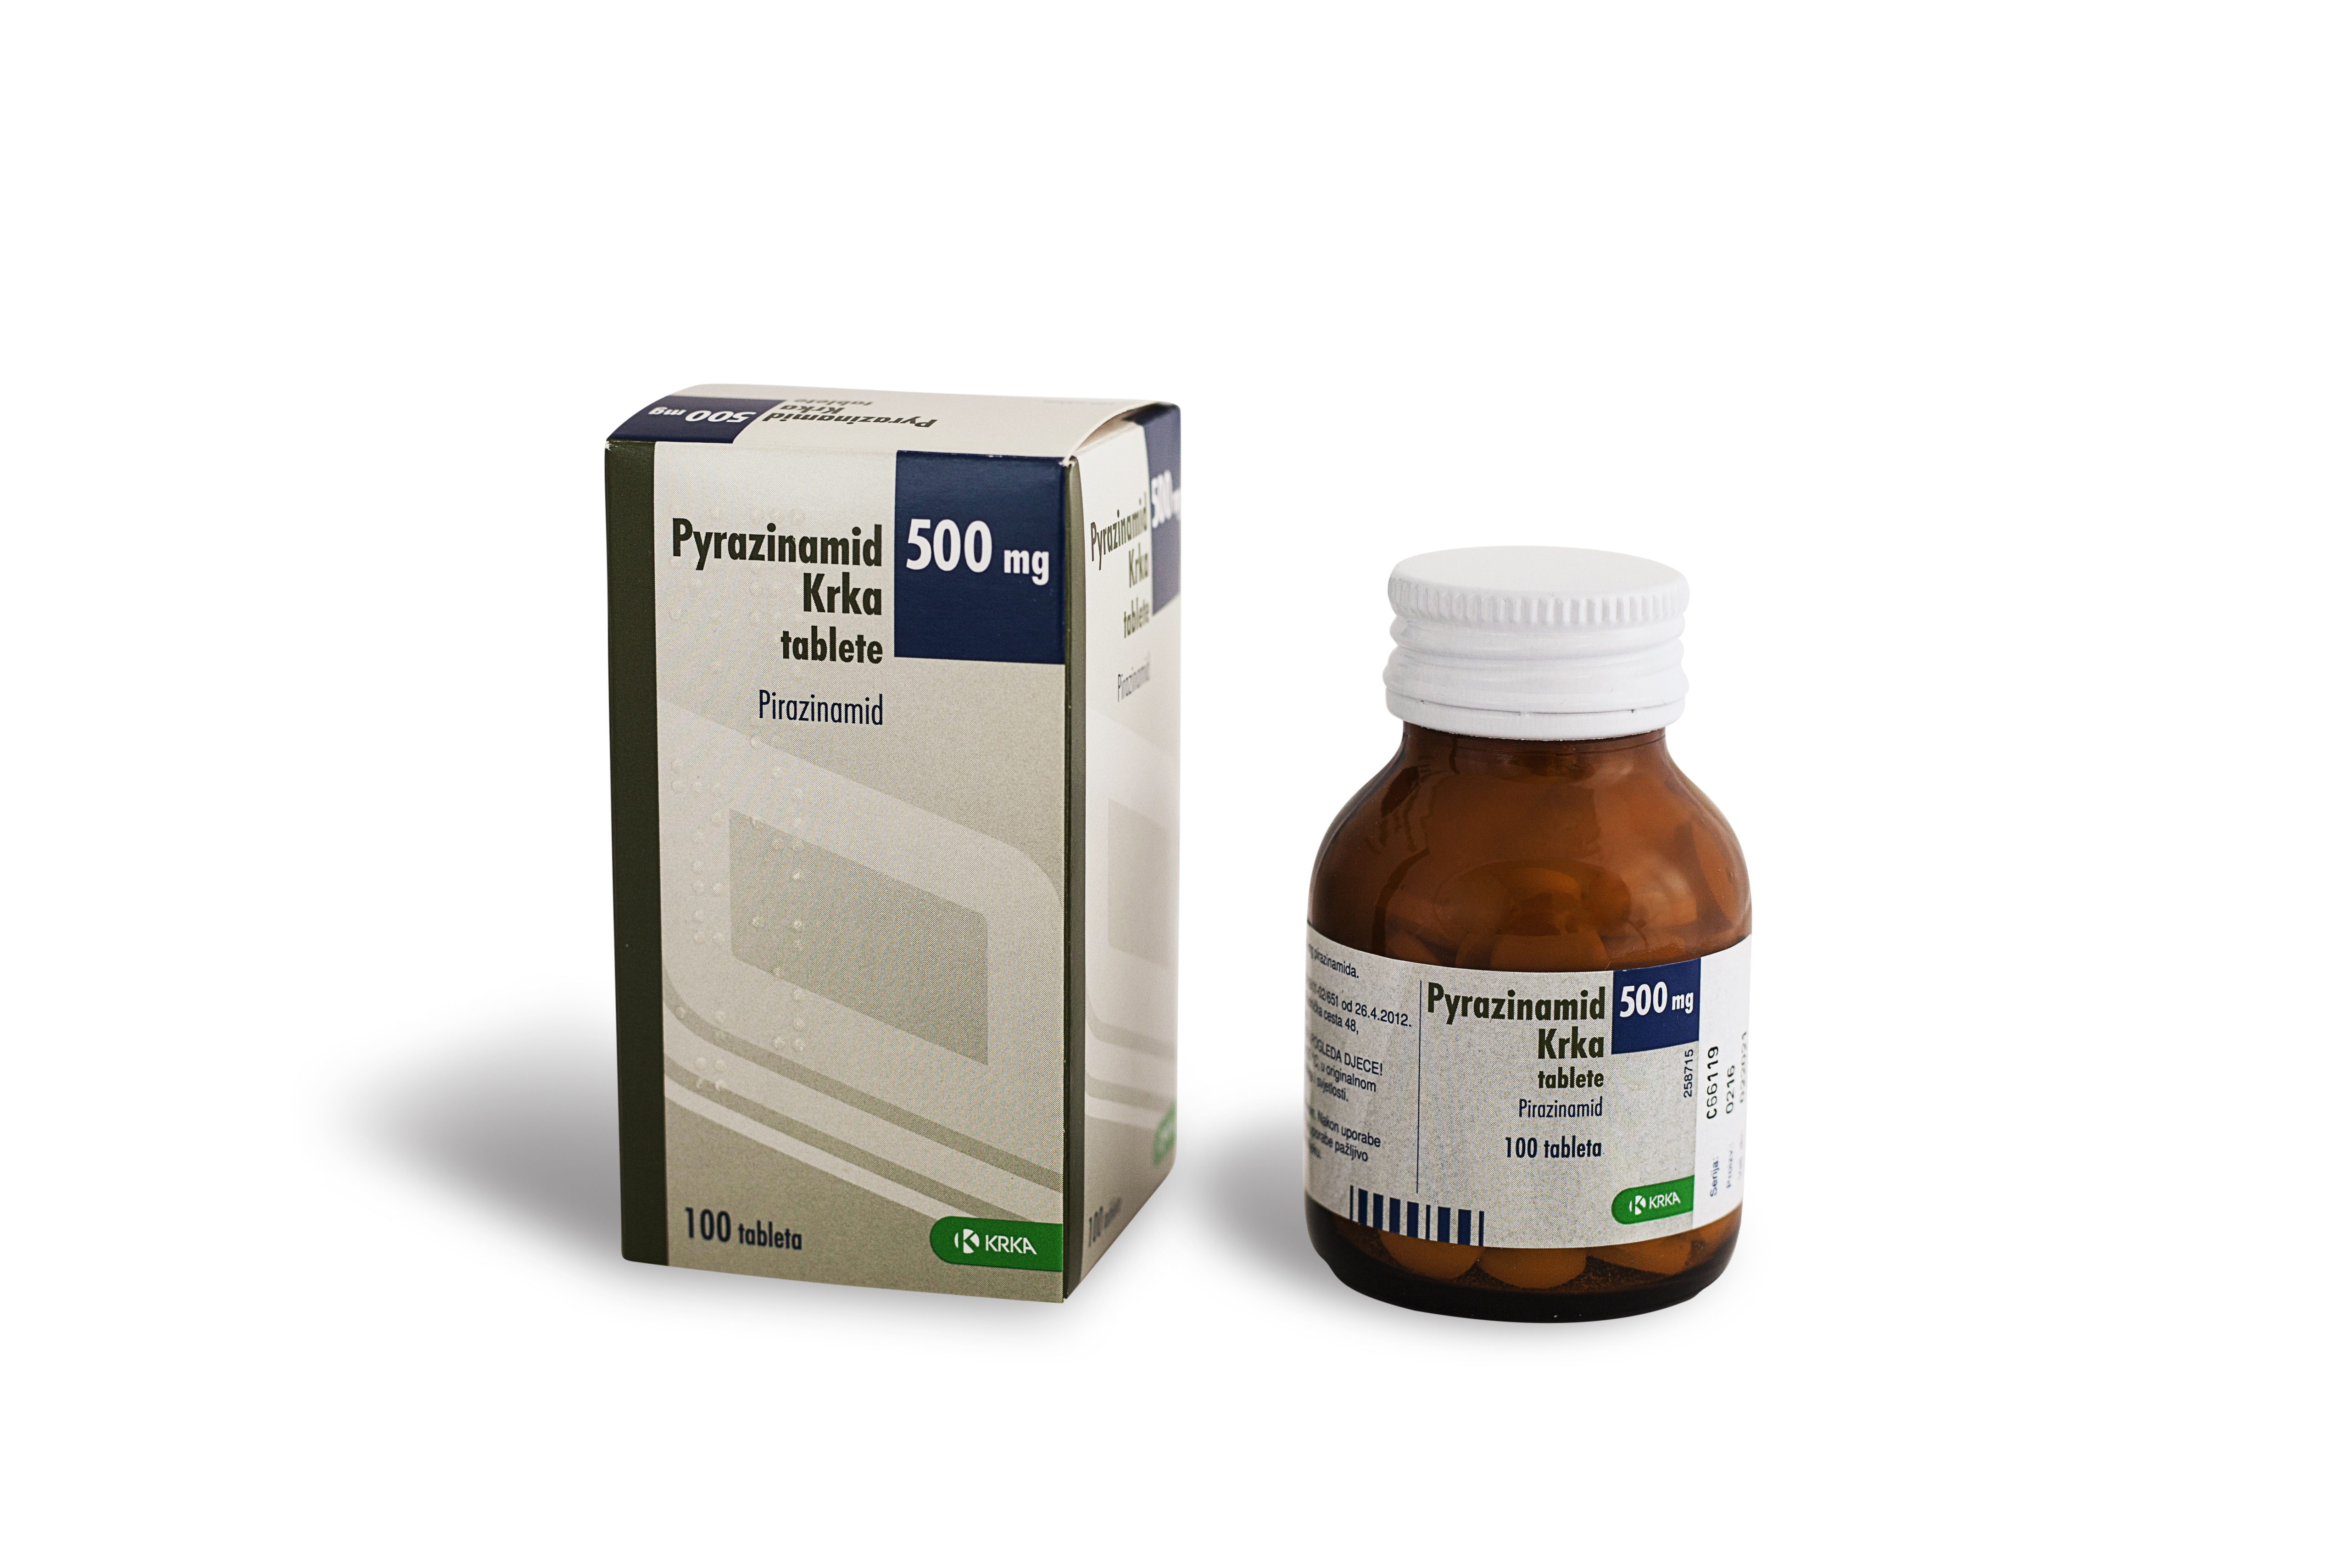 Pyrazinamid